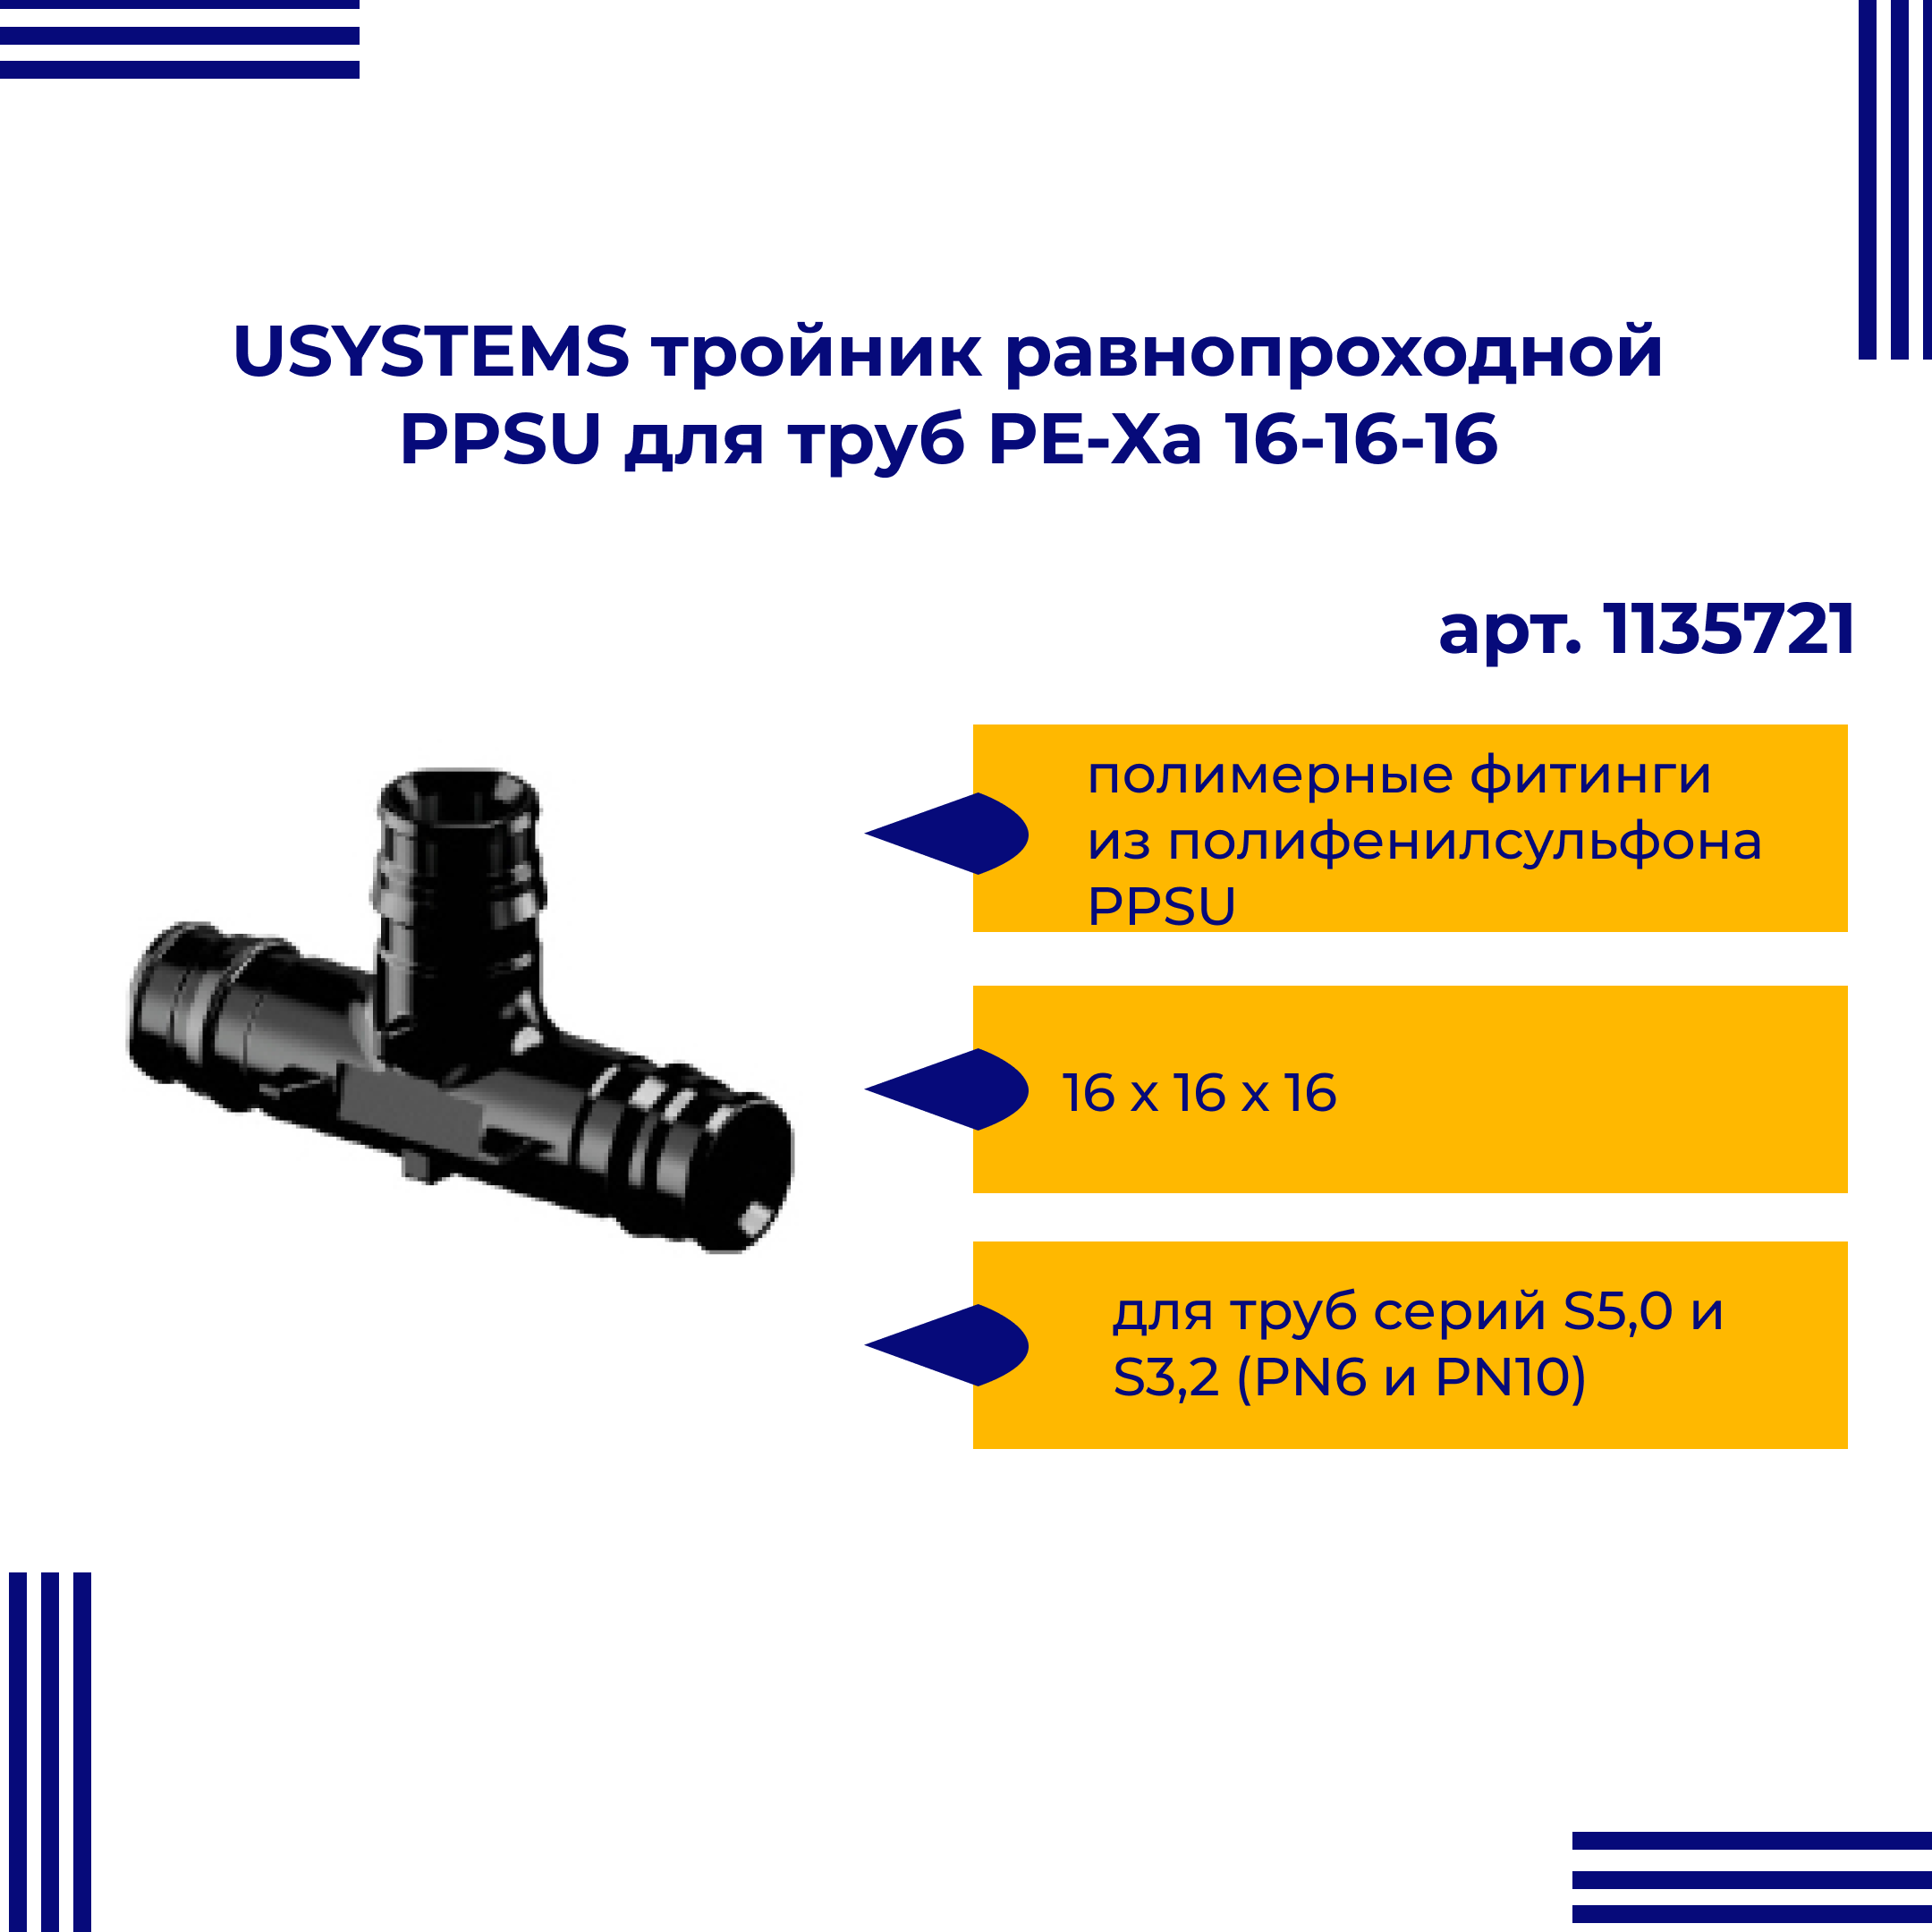 Тройник PPSU USYSTEMS равнопроходной для труб PE-Xa 16-16-16 1135721 viega тройник ввв 3 4 3 4 3 4 бронза rx равнопроходной 264246